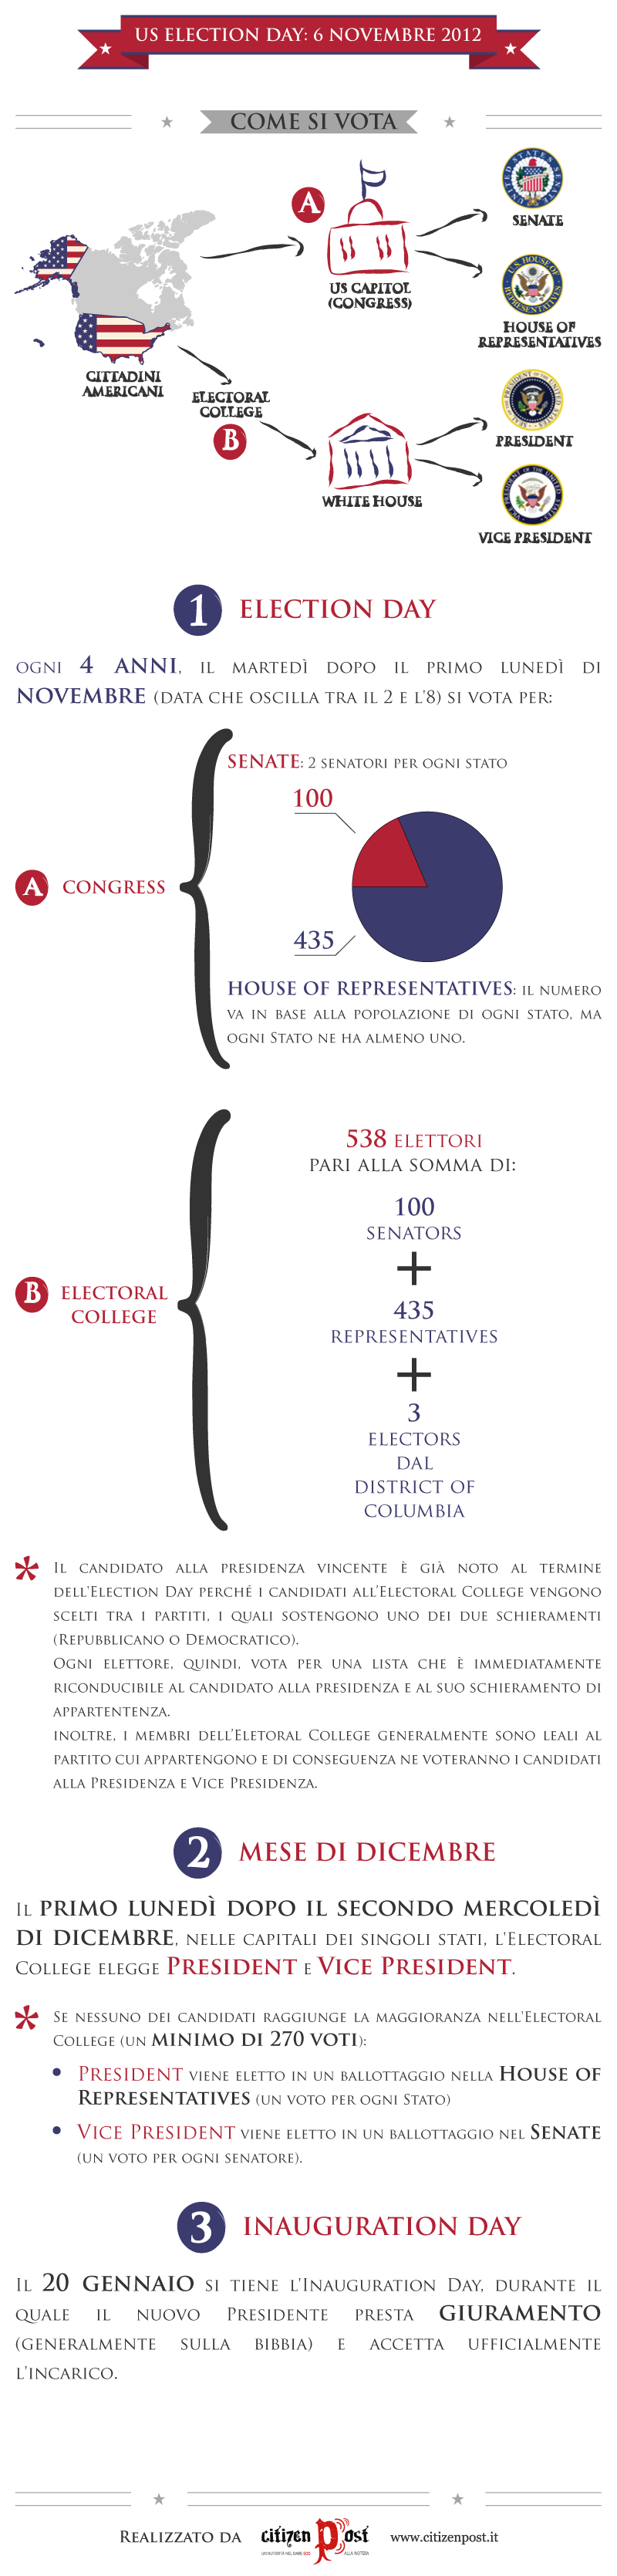 Infografica elezioni USA: come si vota